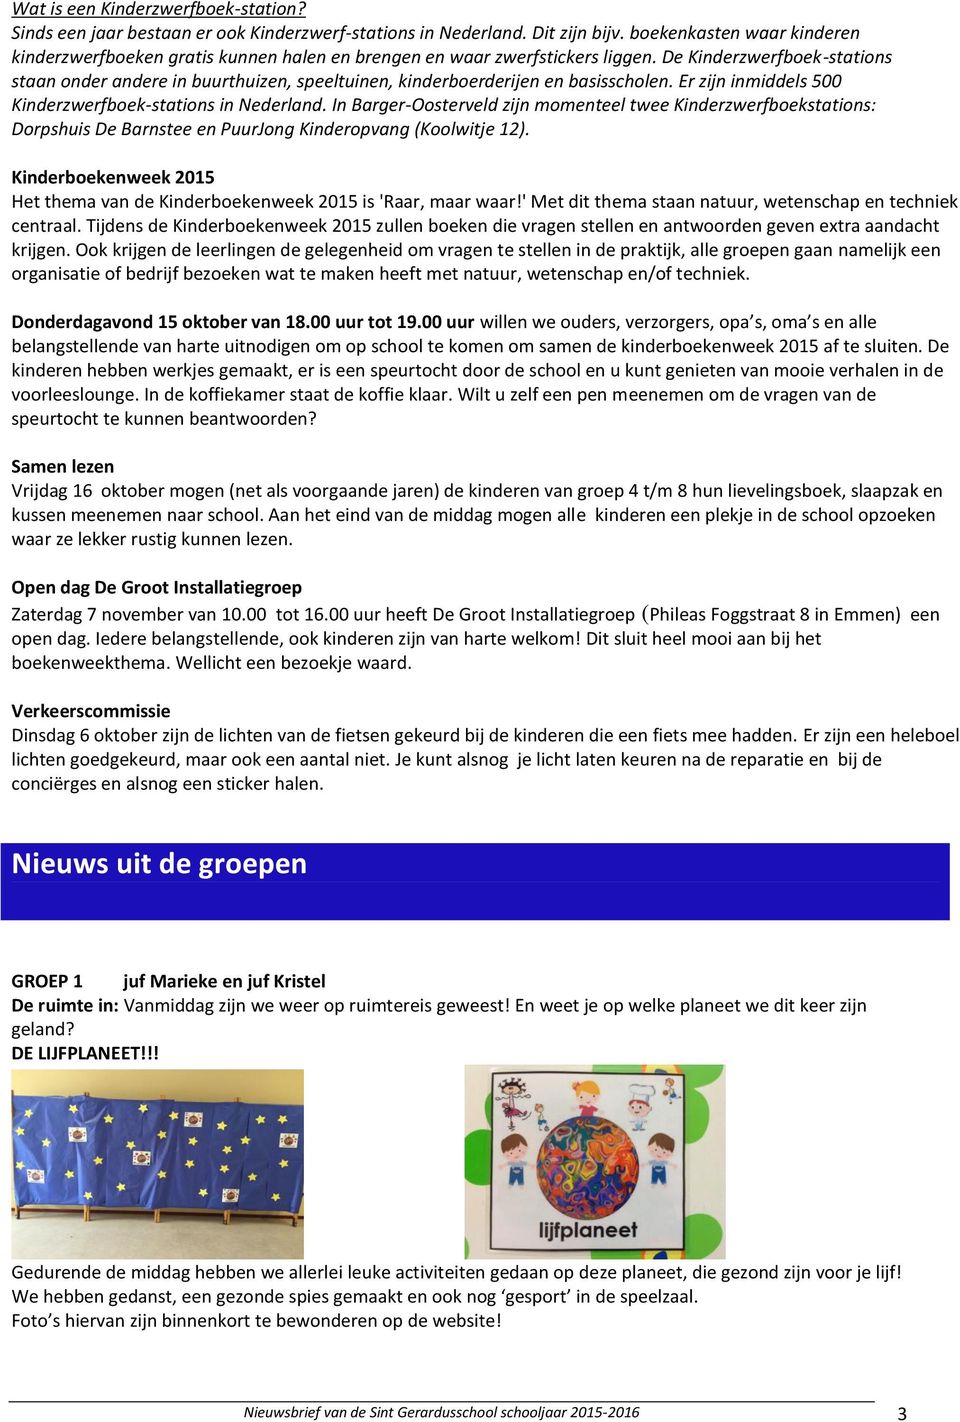 De Kinderzwerfboek-stations staan onder andere in buurthuizen, speeltuinen, kinderboerderijen en basisscholen. Er zijn inmiddels 500 Kinderzwerfboek-stations in Nederland.